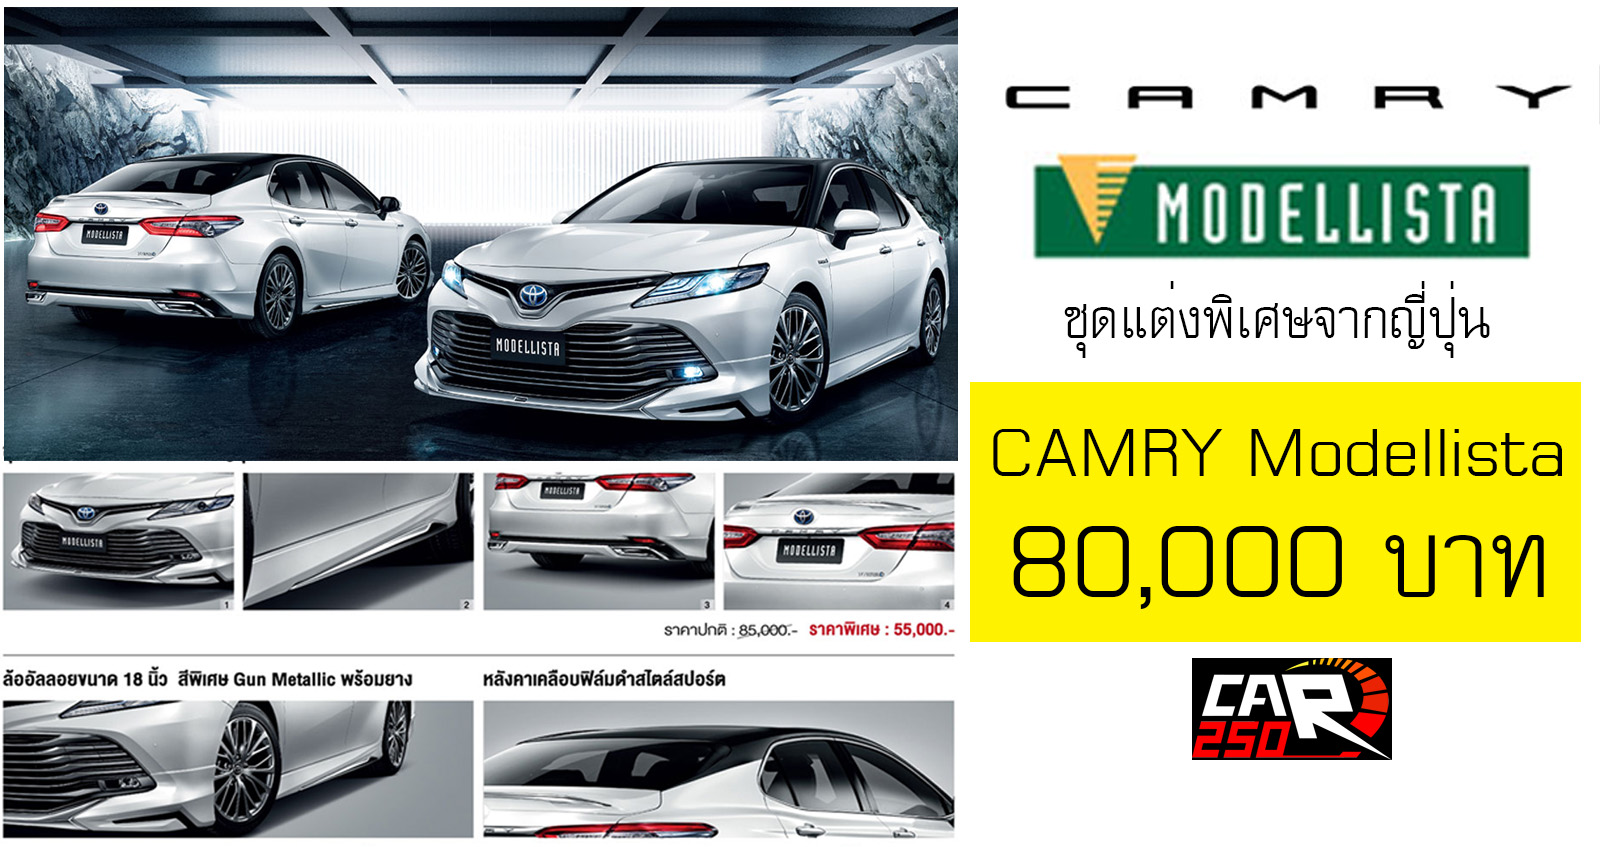 เปิดตัวชุดแต่ง Toyota CAMRY Modellista จากญี่ปุ่น ราคา 80,000 บาท